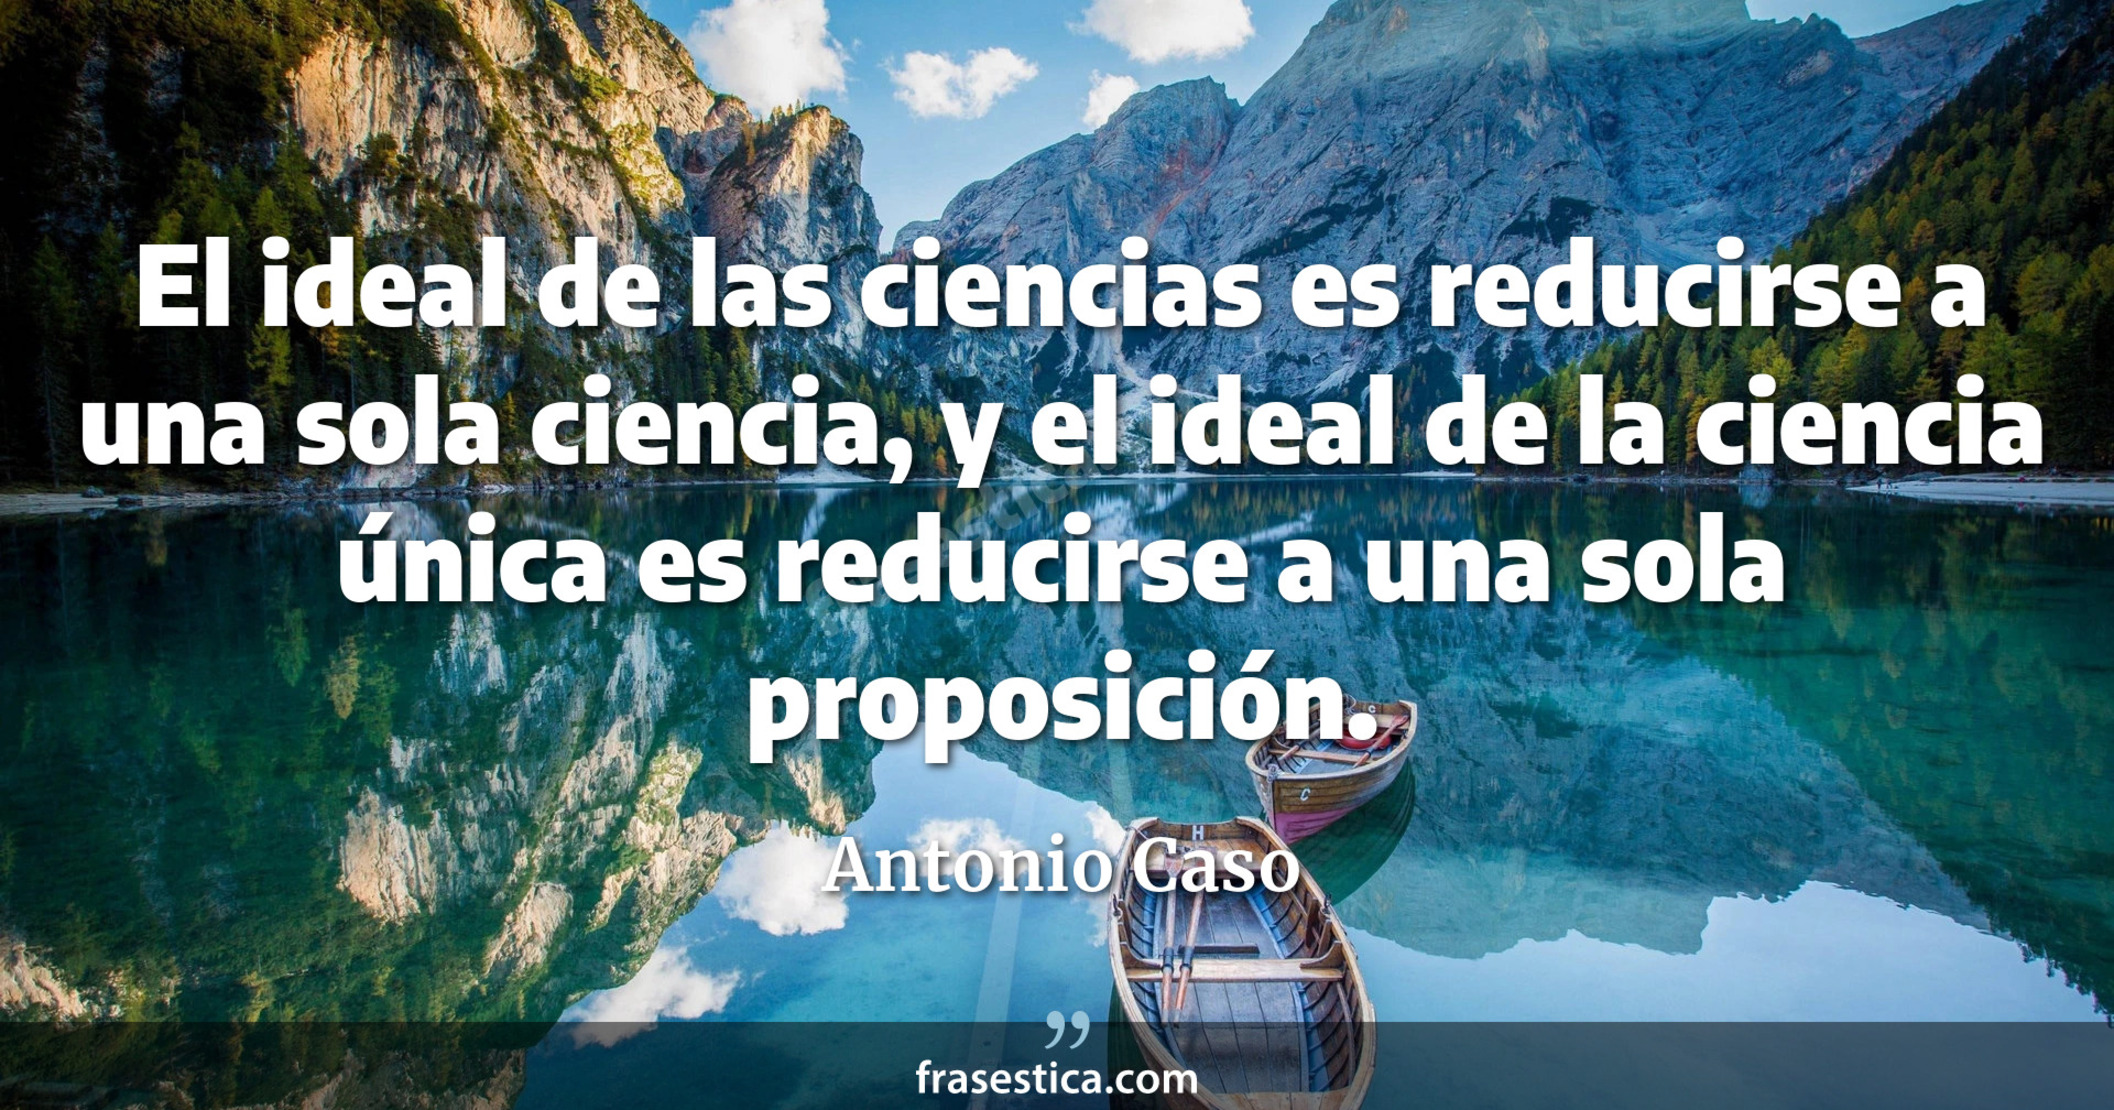 El ideal de las ciencias es reducirse a una sola ciencia, y el ideal de la ciencia única es reducirse a una sola proposición. - Antonio Caso